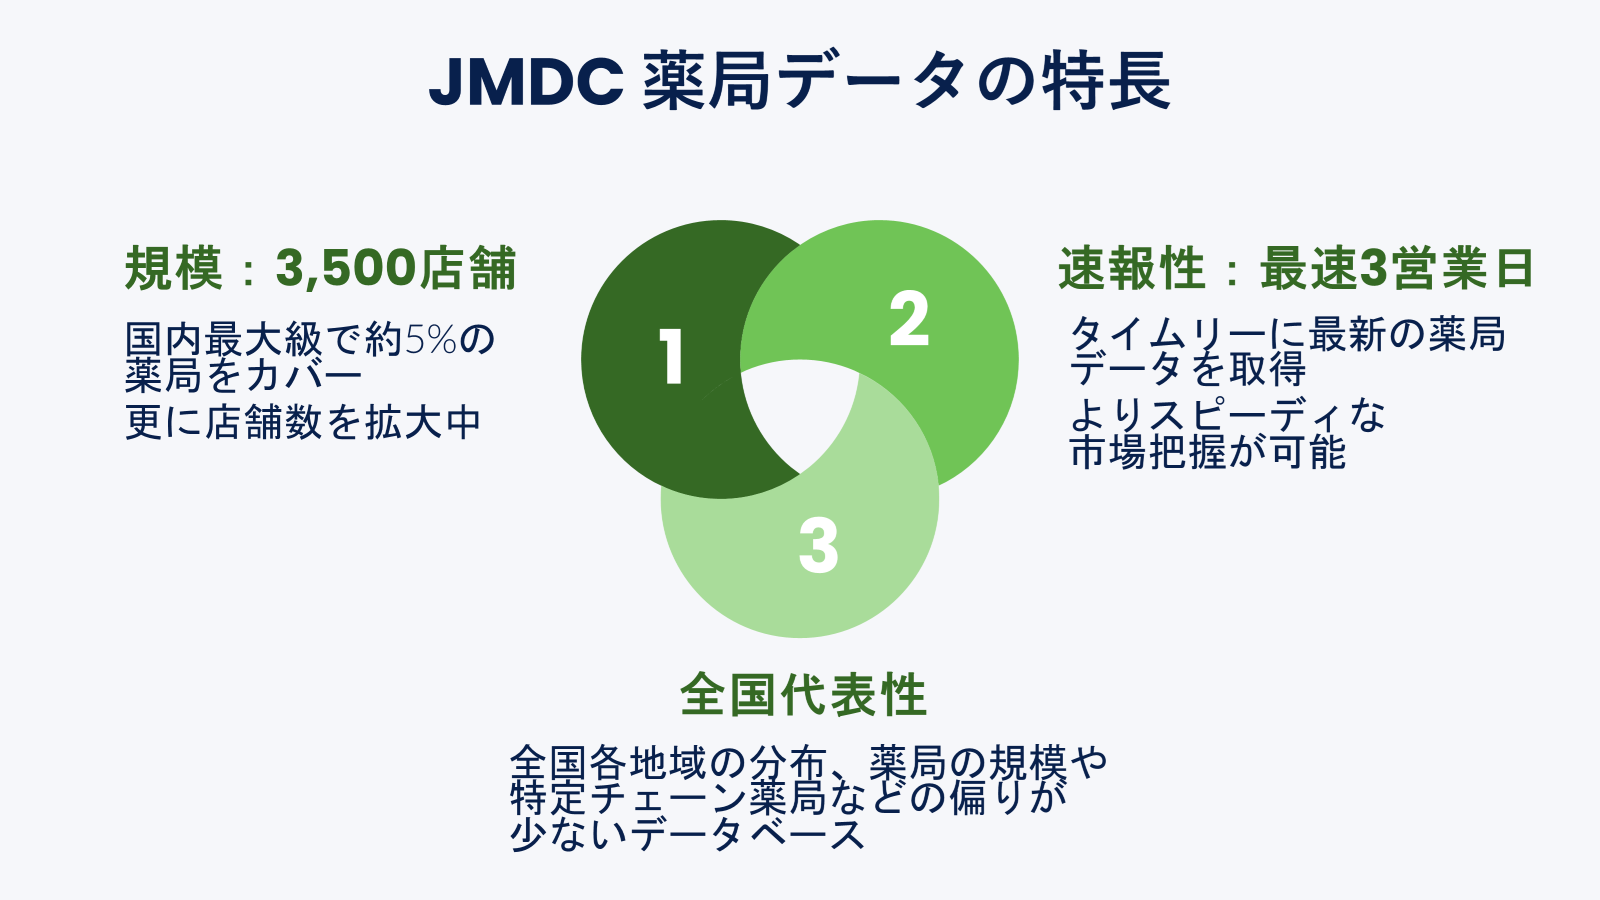 JMDCA3,500X܂𒴂ǃf[^񋟊Jn̂m点